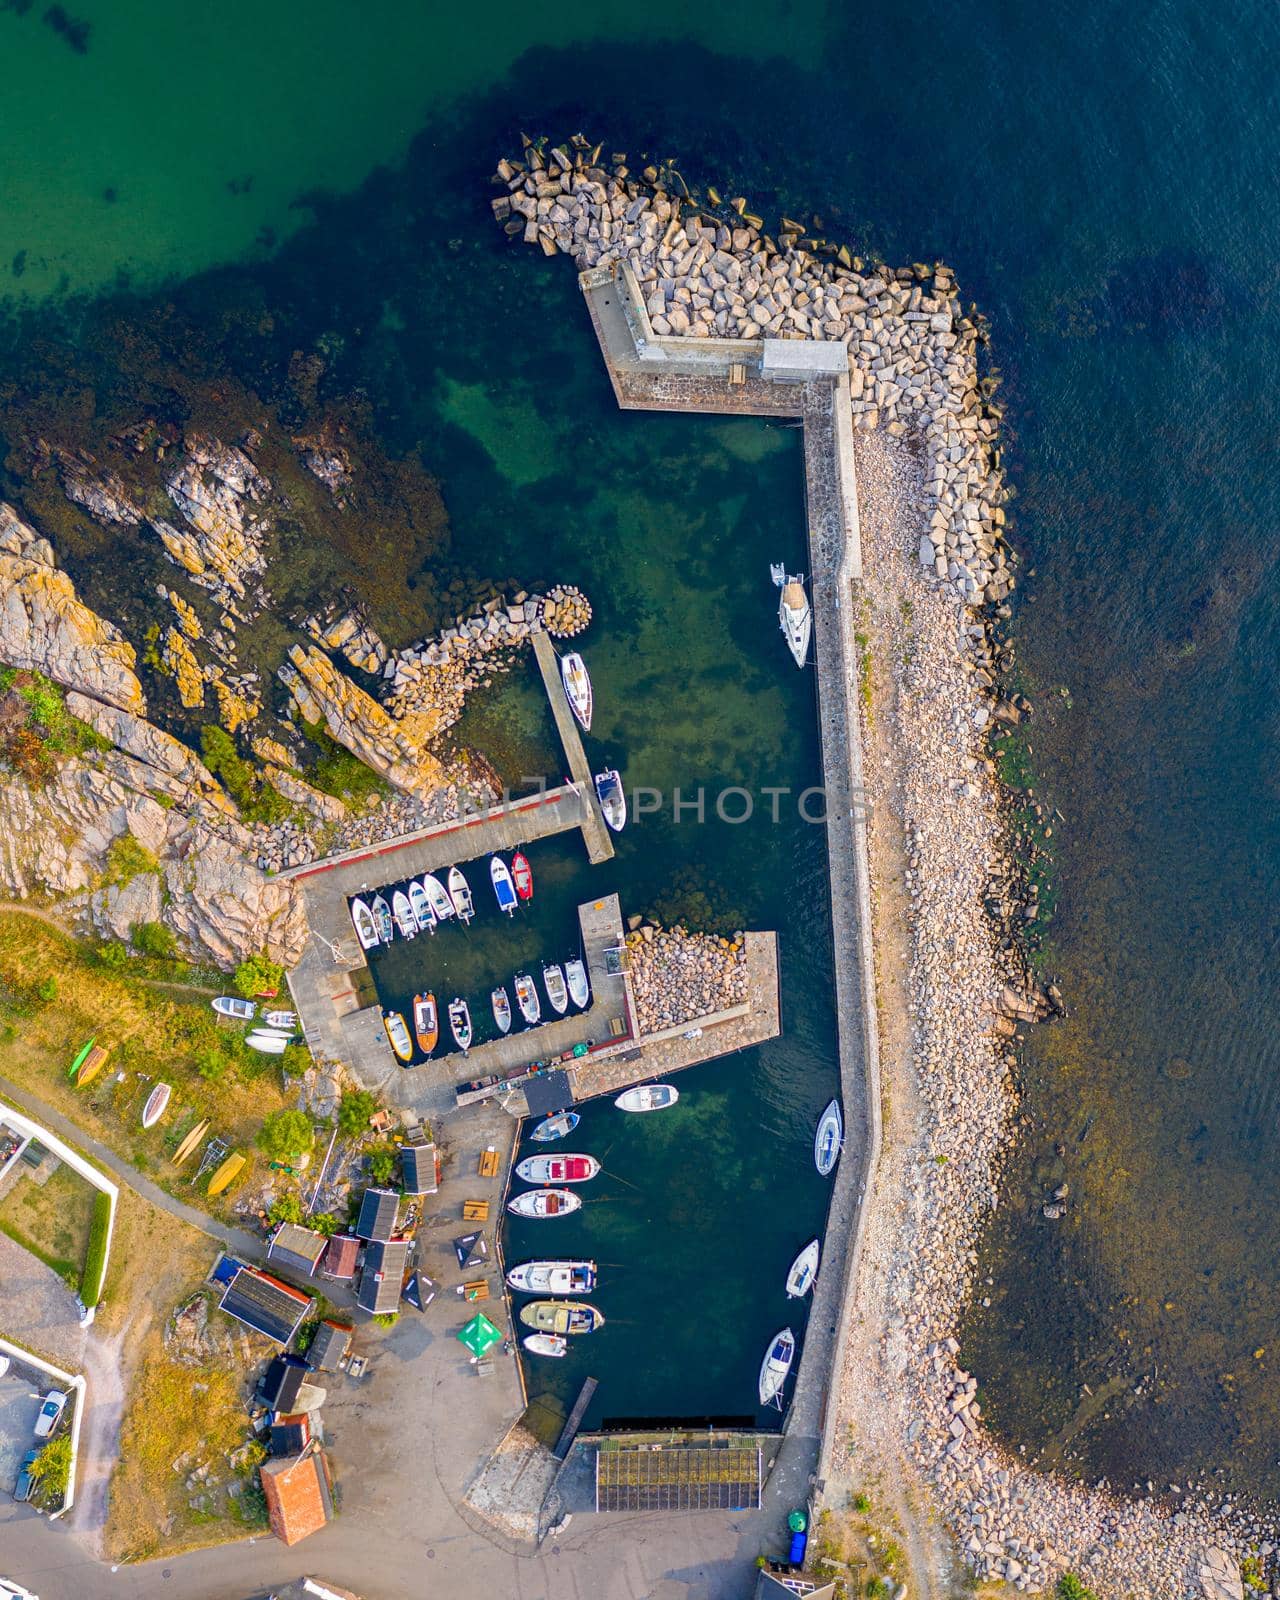 Drone View of Sandvig Port on Bornholm, Denmark by oliverfoerstner